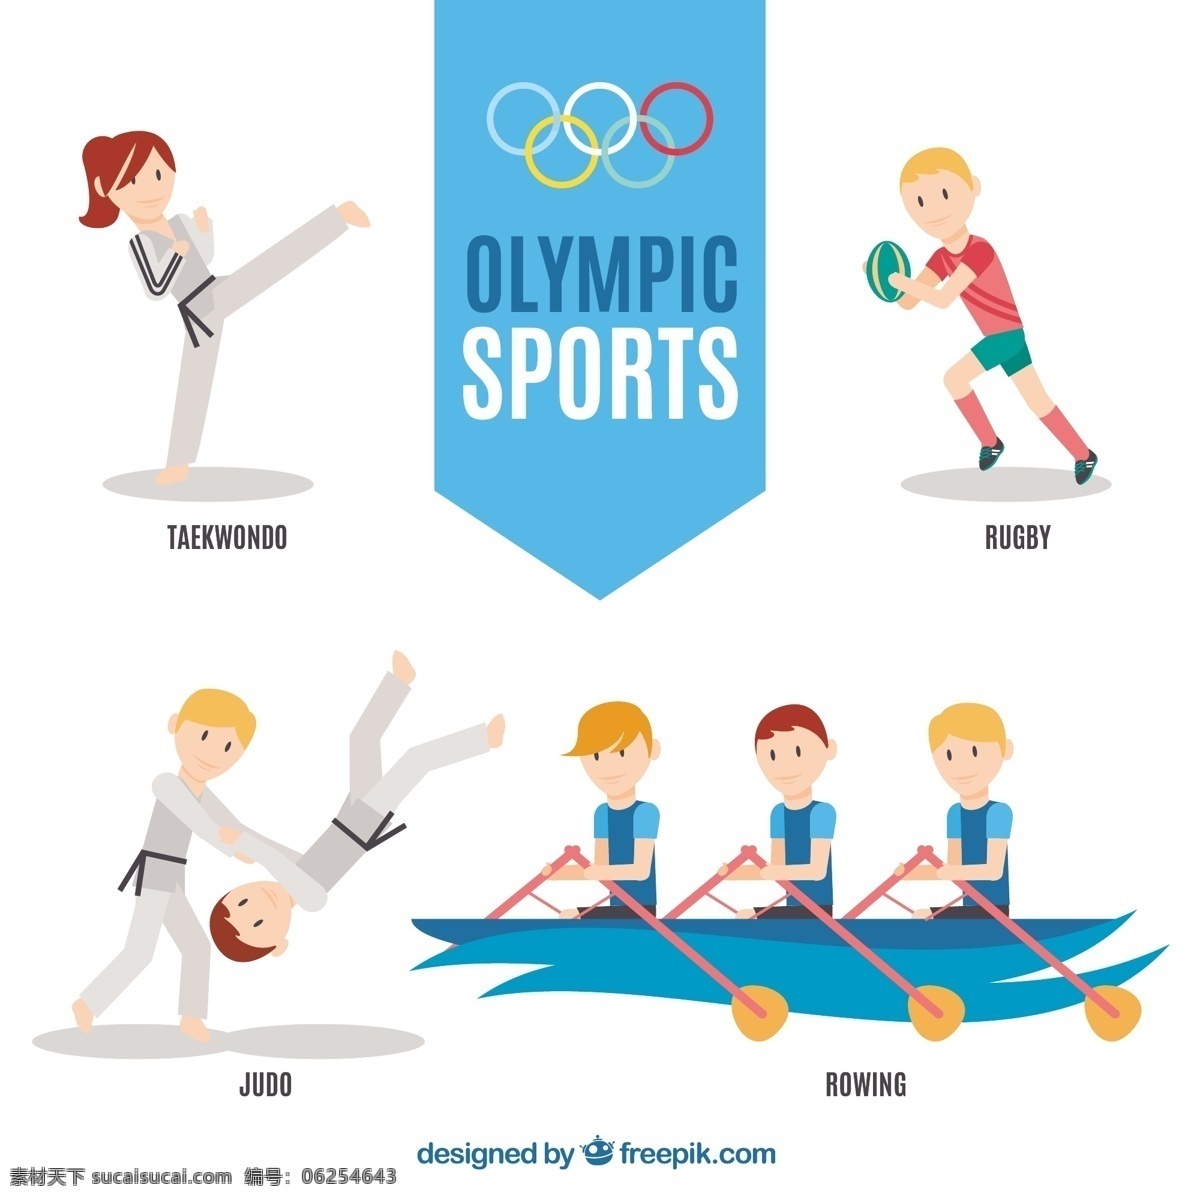 运动 人 做 奥林匹克运动 夏季 体育 健身 健康 活动 2016 训练 运动会 巴西 人体 橄榄球 人物 比赛 生活方式